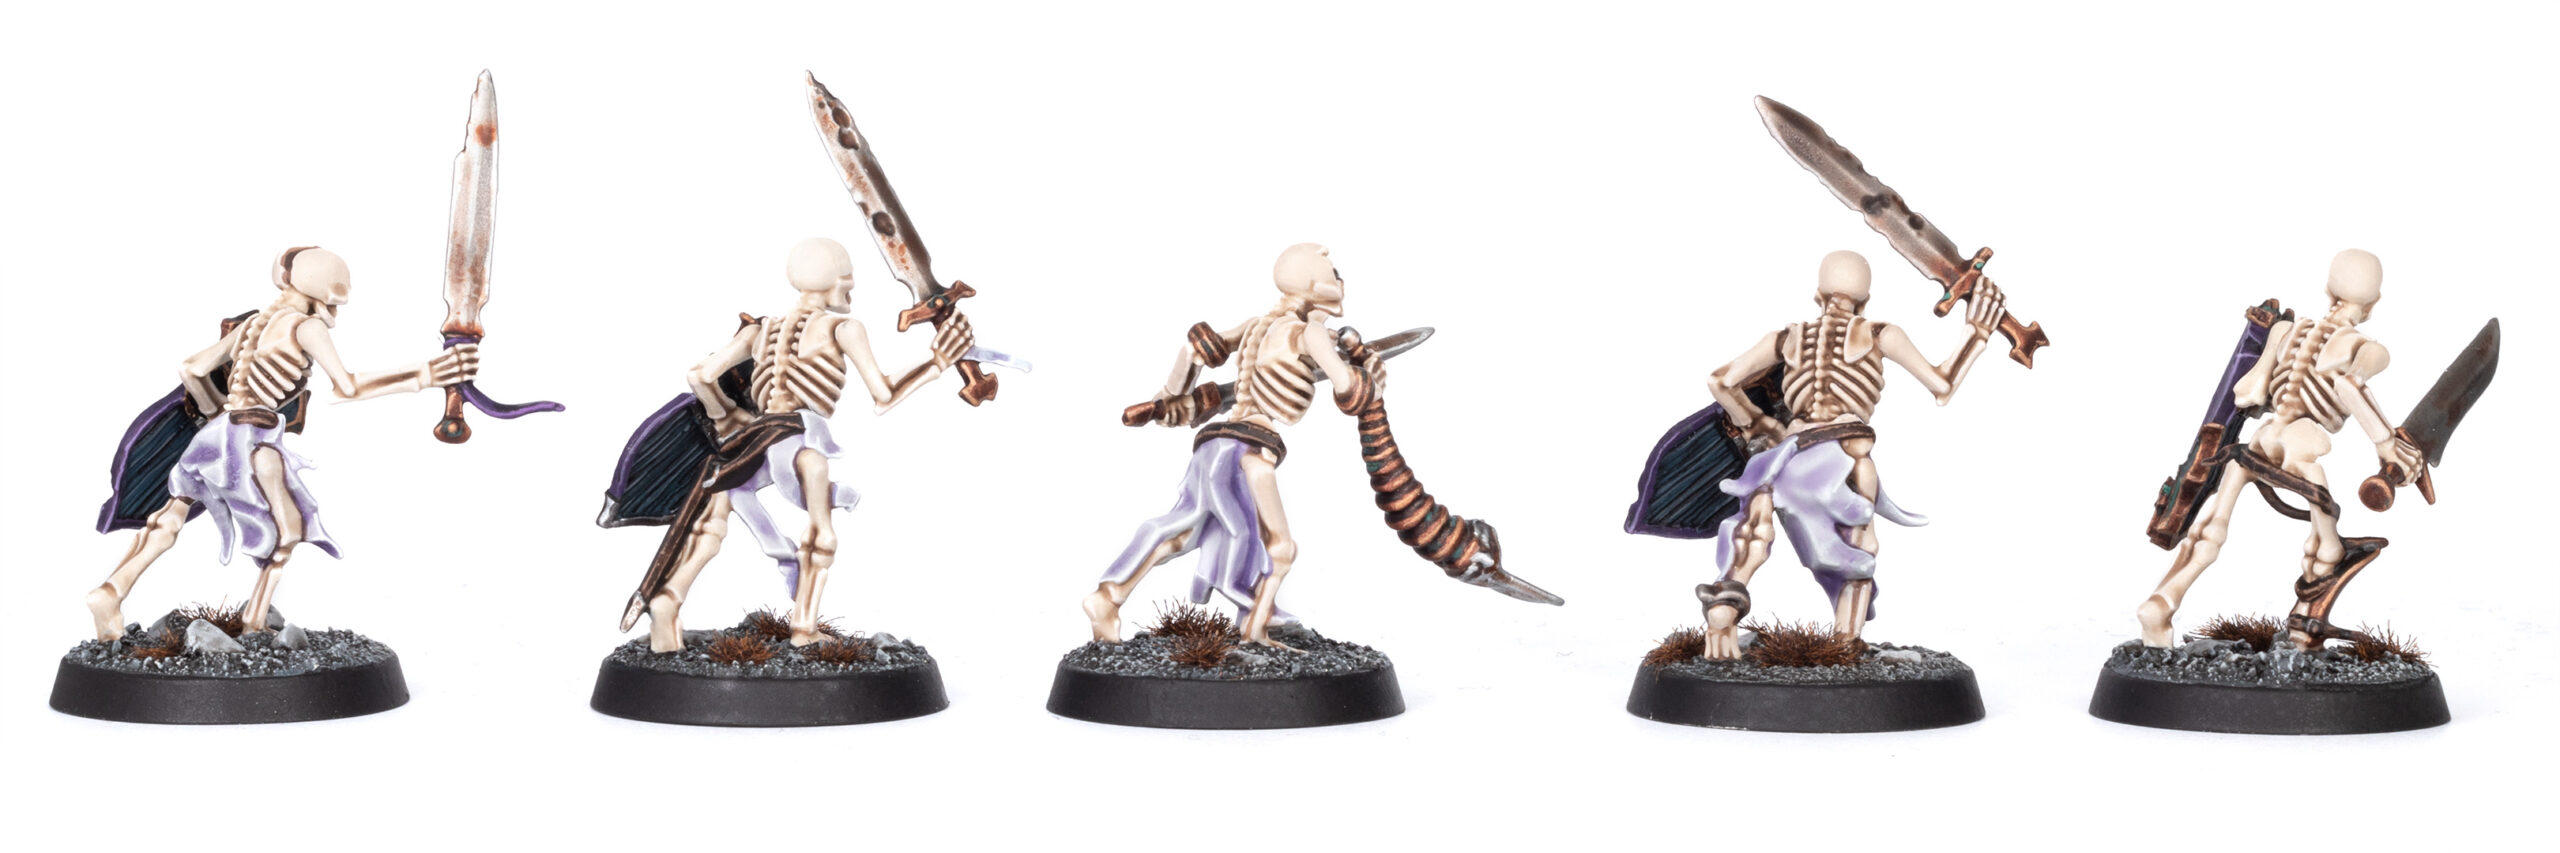 Age of Sigmar Soulblight Gravelords Deathrattle Skeletons 2021 10 Models 